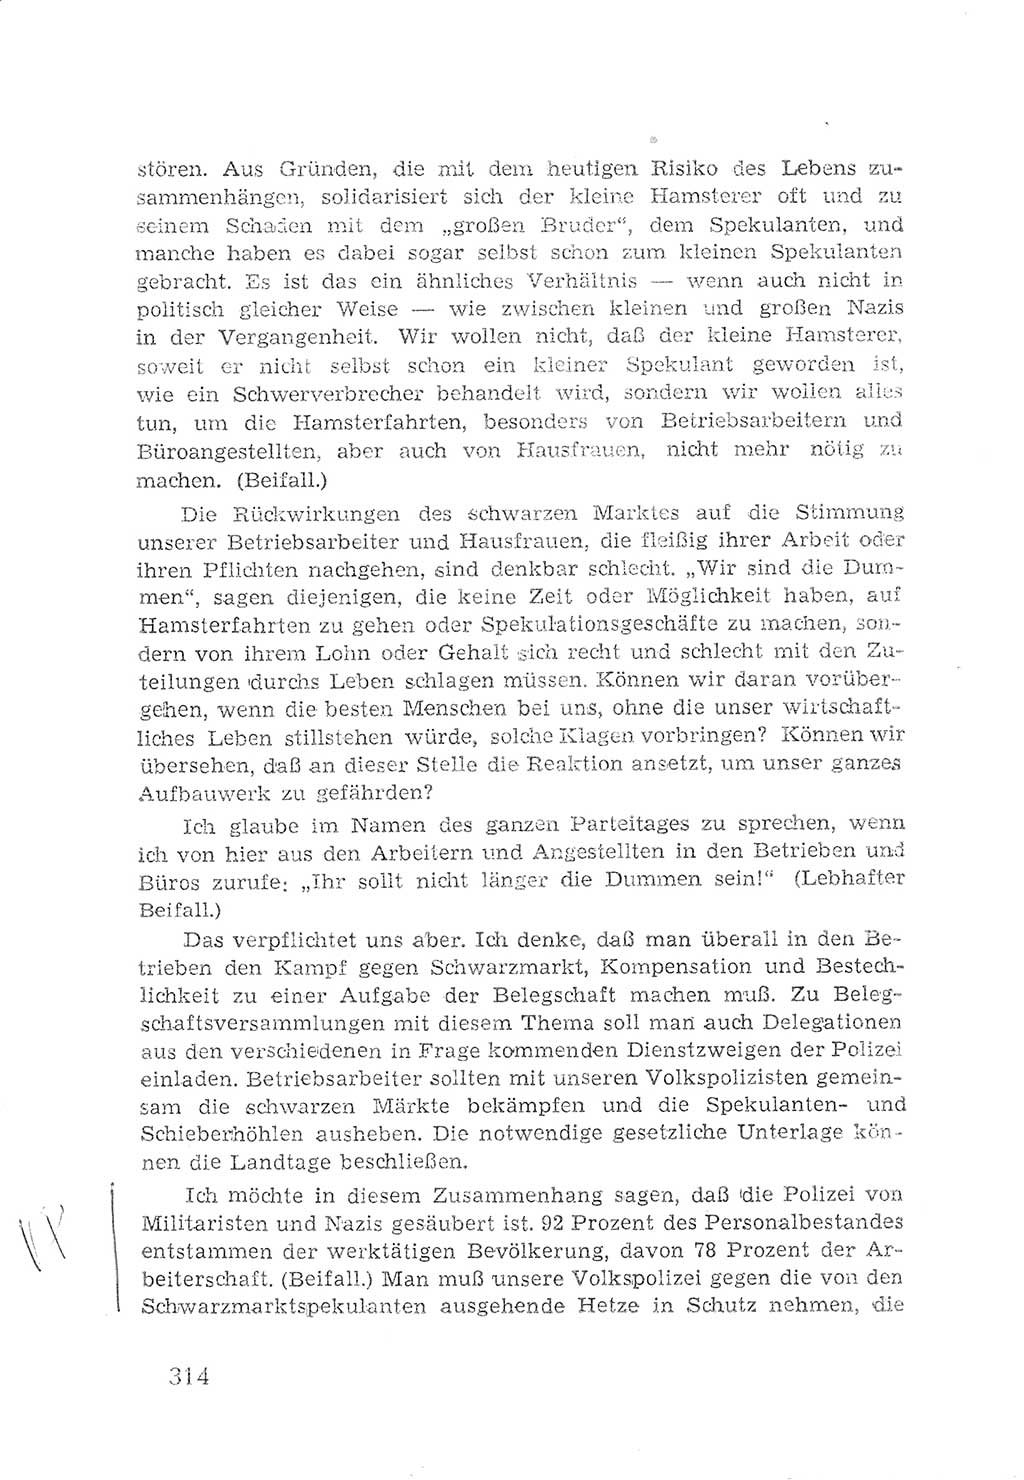 Protokoll der Verhandlungen des 2. Parteitages der Sozialistischen Einheitspartei Deutschlands (SED) [Sowjetische Besatzungszone (SBZ) Deutschlands] 1947, Seite 314 (Prot. Verh. 2. PT SED SBZ Dtl. 1947, S. 314)